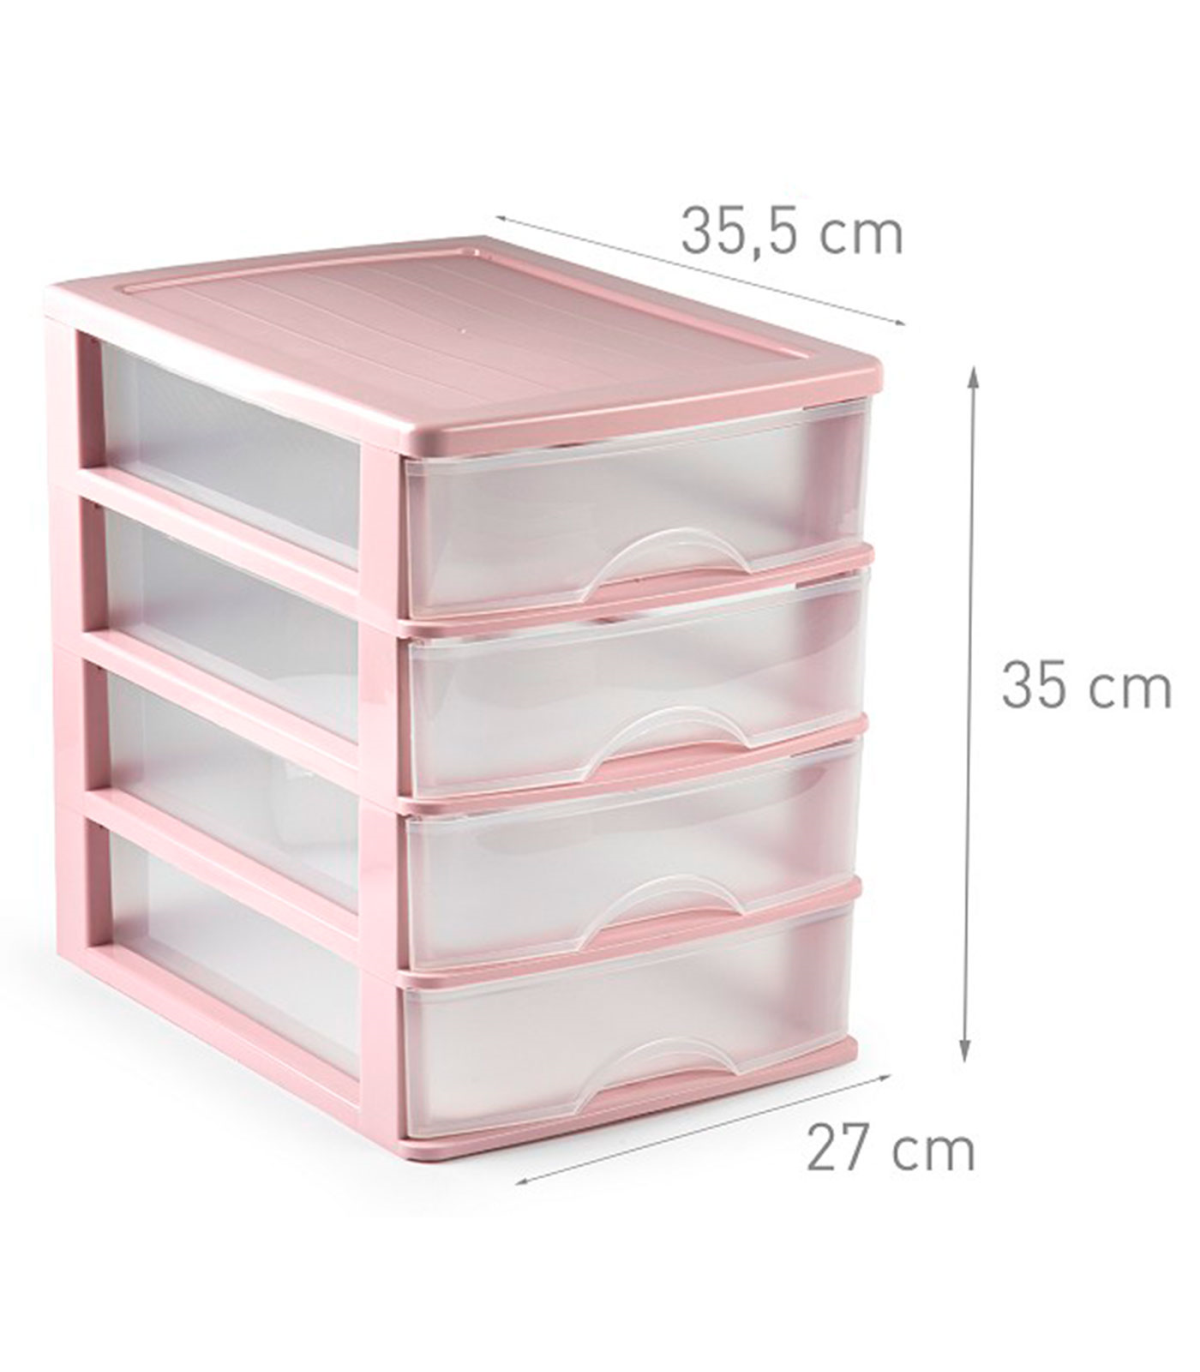 Tradineur - Cajonera sobremesa de plástico, 4 cajones, torre de almacenaje  multiusos, escritorio, armario, baño, oficina (Rosa